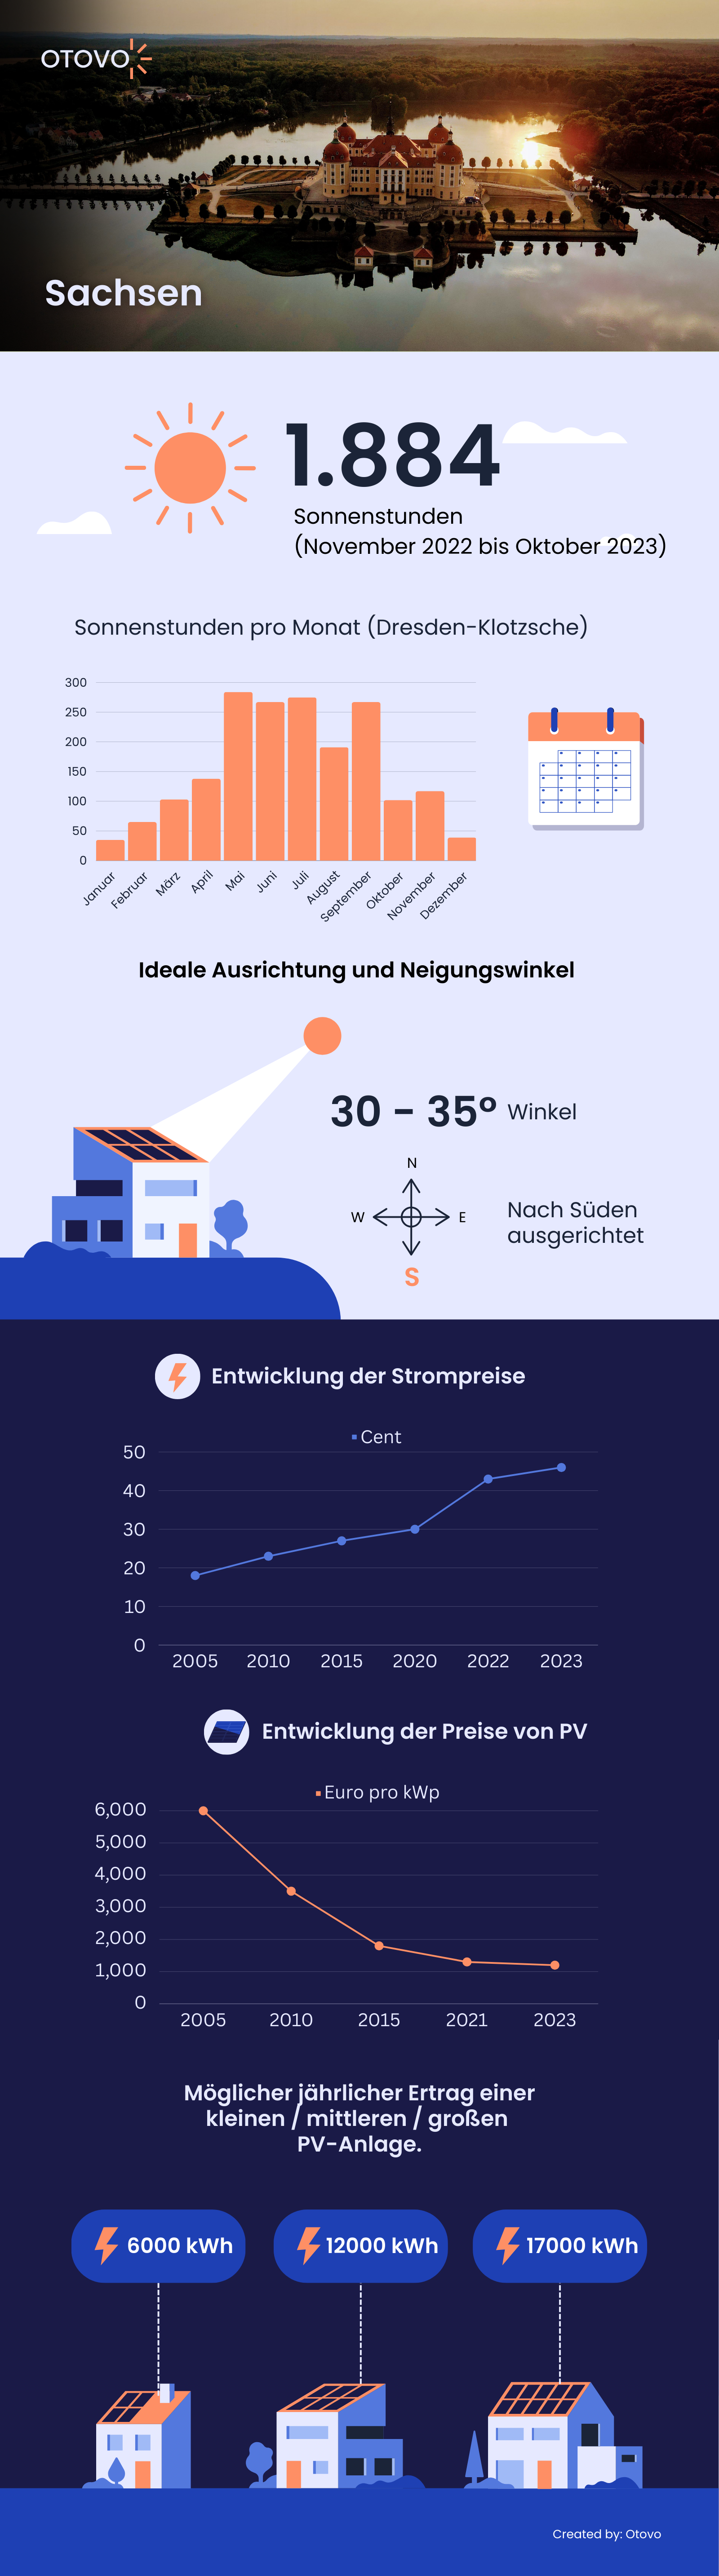 Infografik zu Solaranlagen in Sachsen